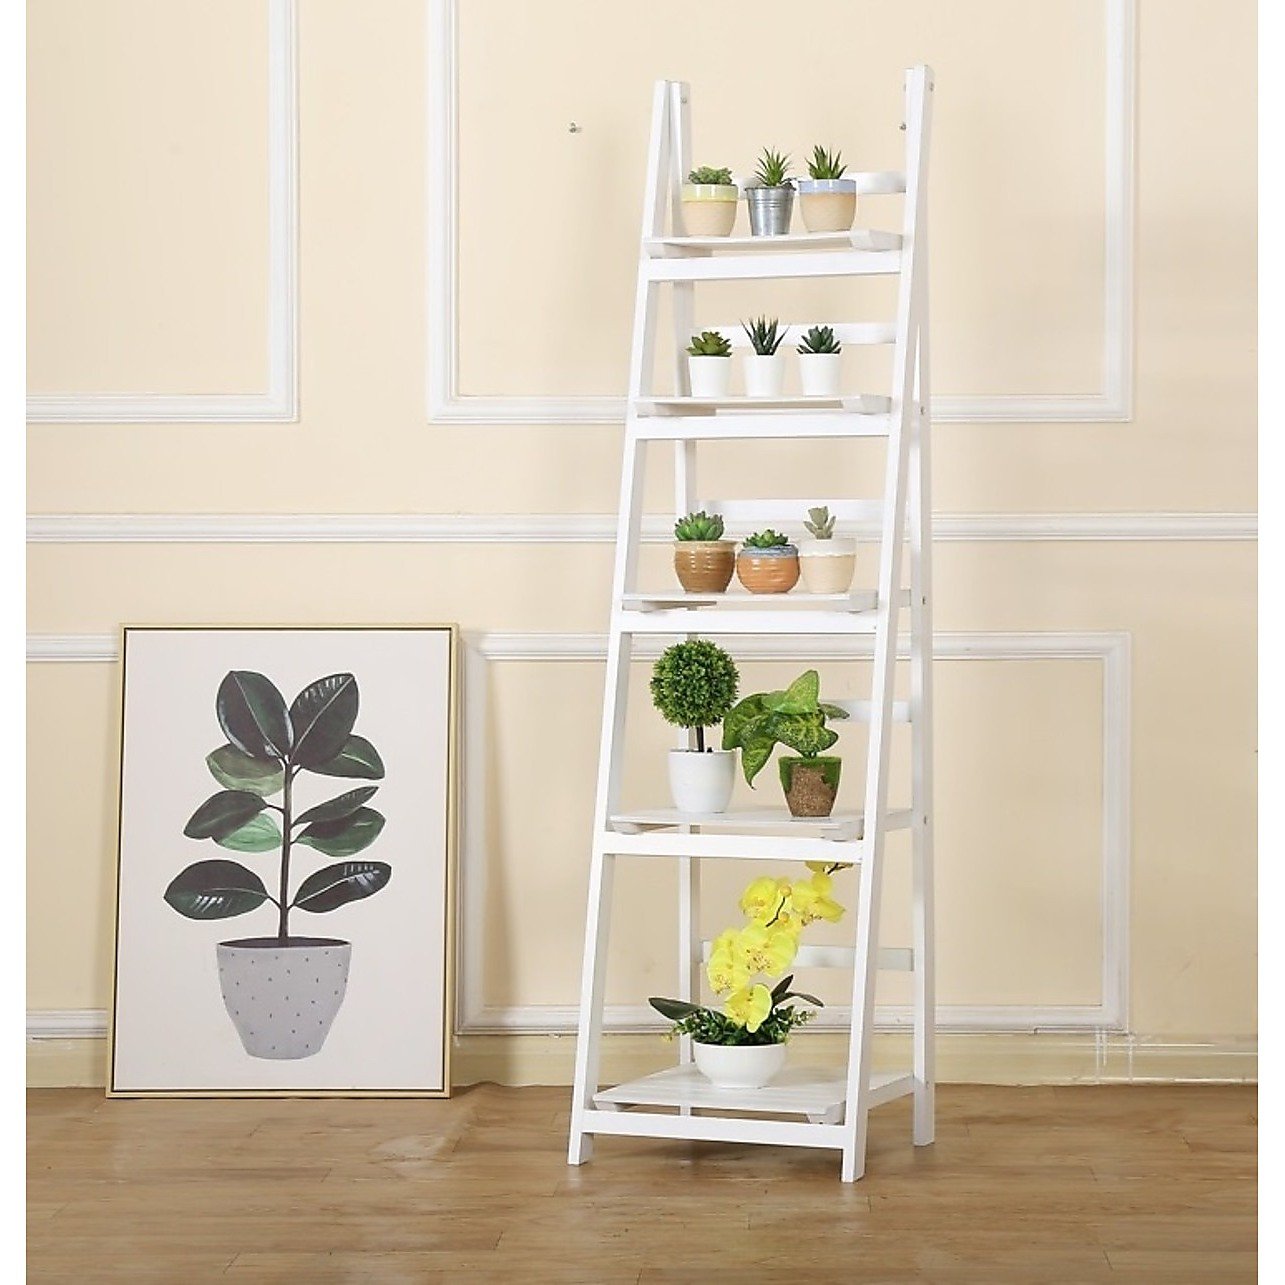 5 Tier Wooden Ladder Shelf Stand Storage Book Display Rack - White